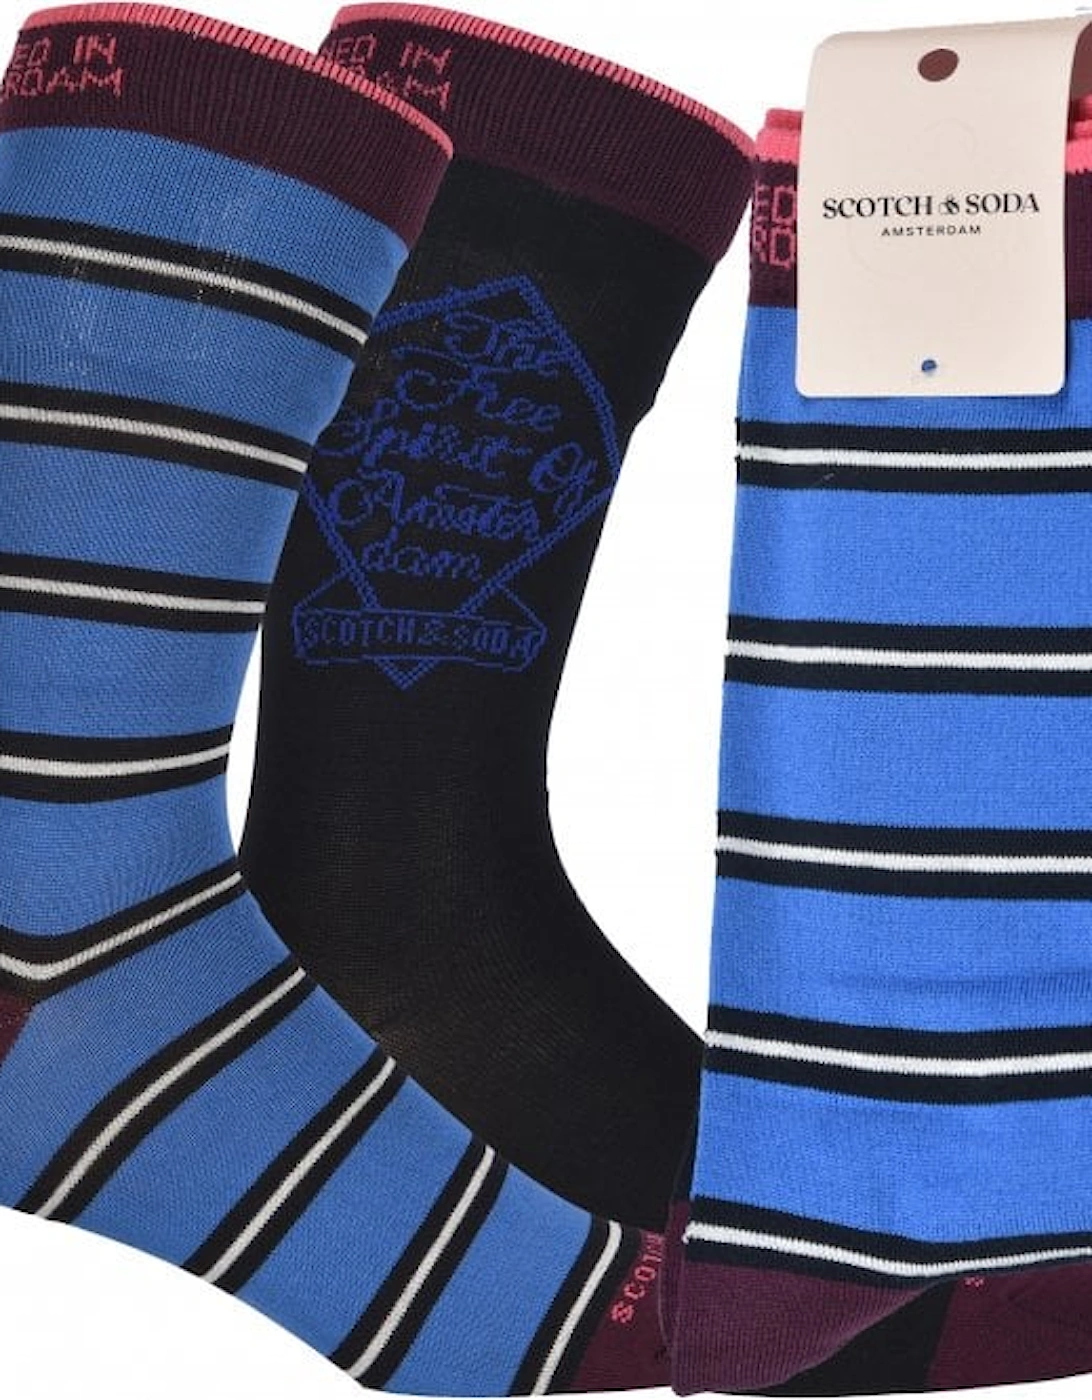 2-Pack True Spirit of Amsterdam Socks, Blue/Black, 6 of 5